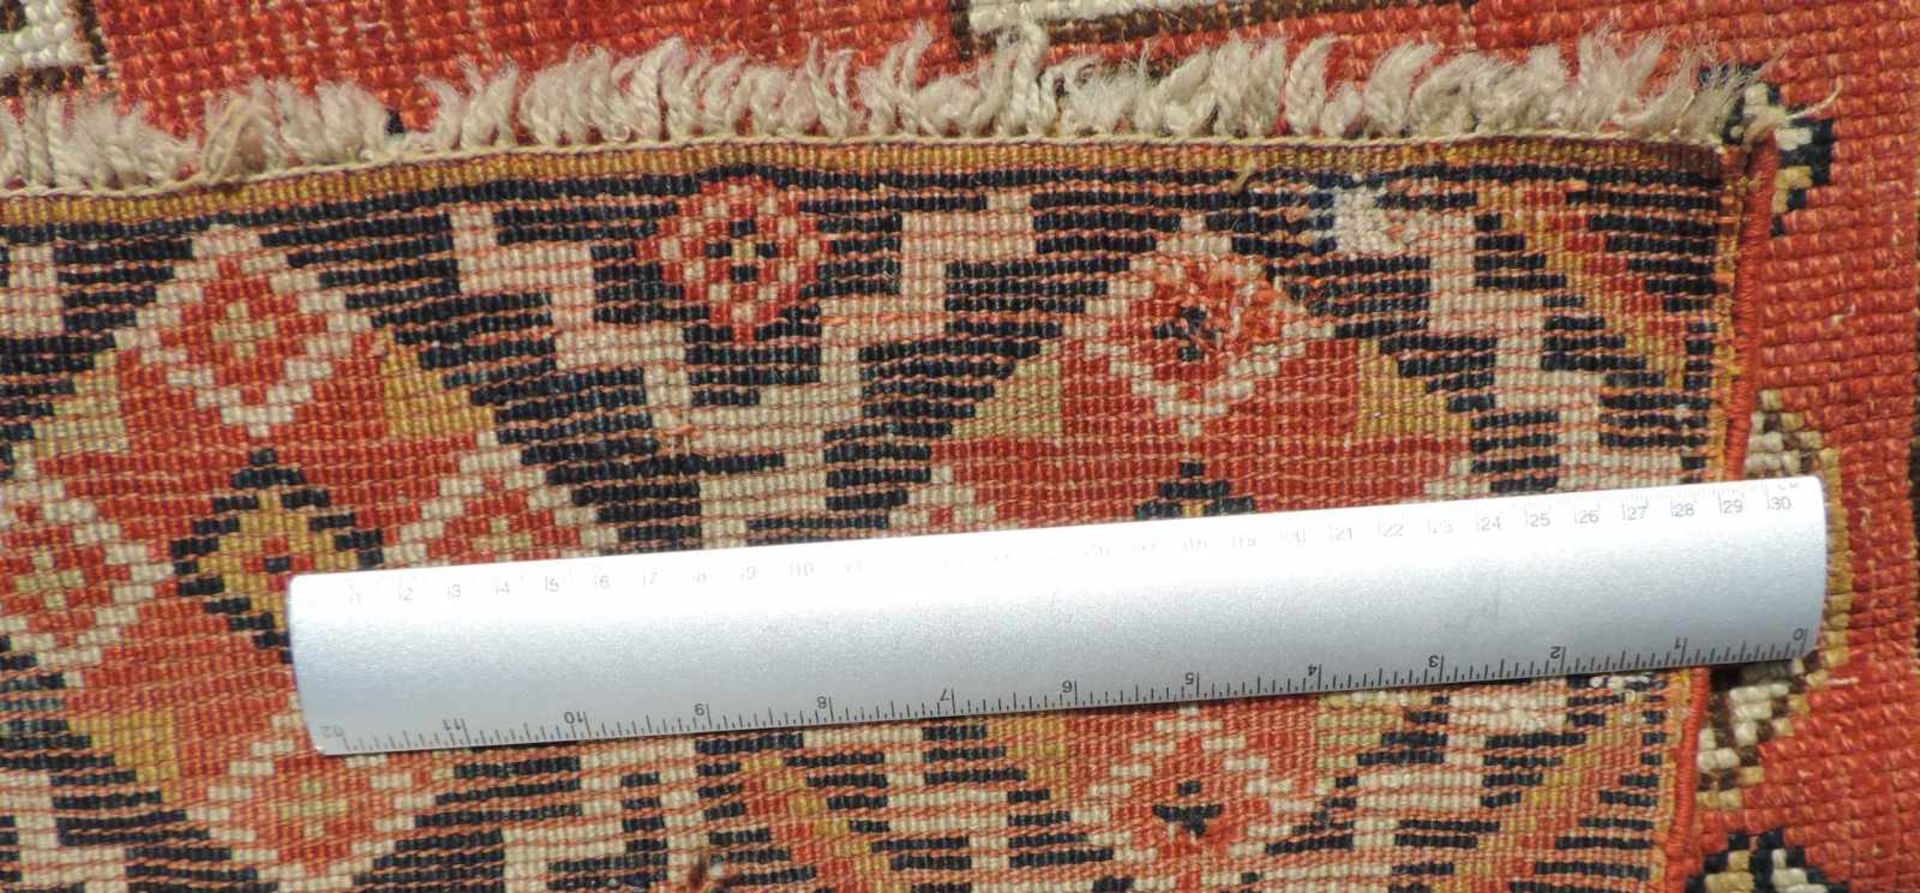 Bergama carpet. Western Anatolia. Turkey. Antique, around 1800. - Image 4 of 4